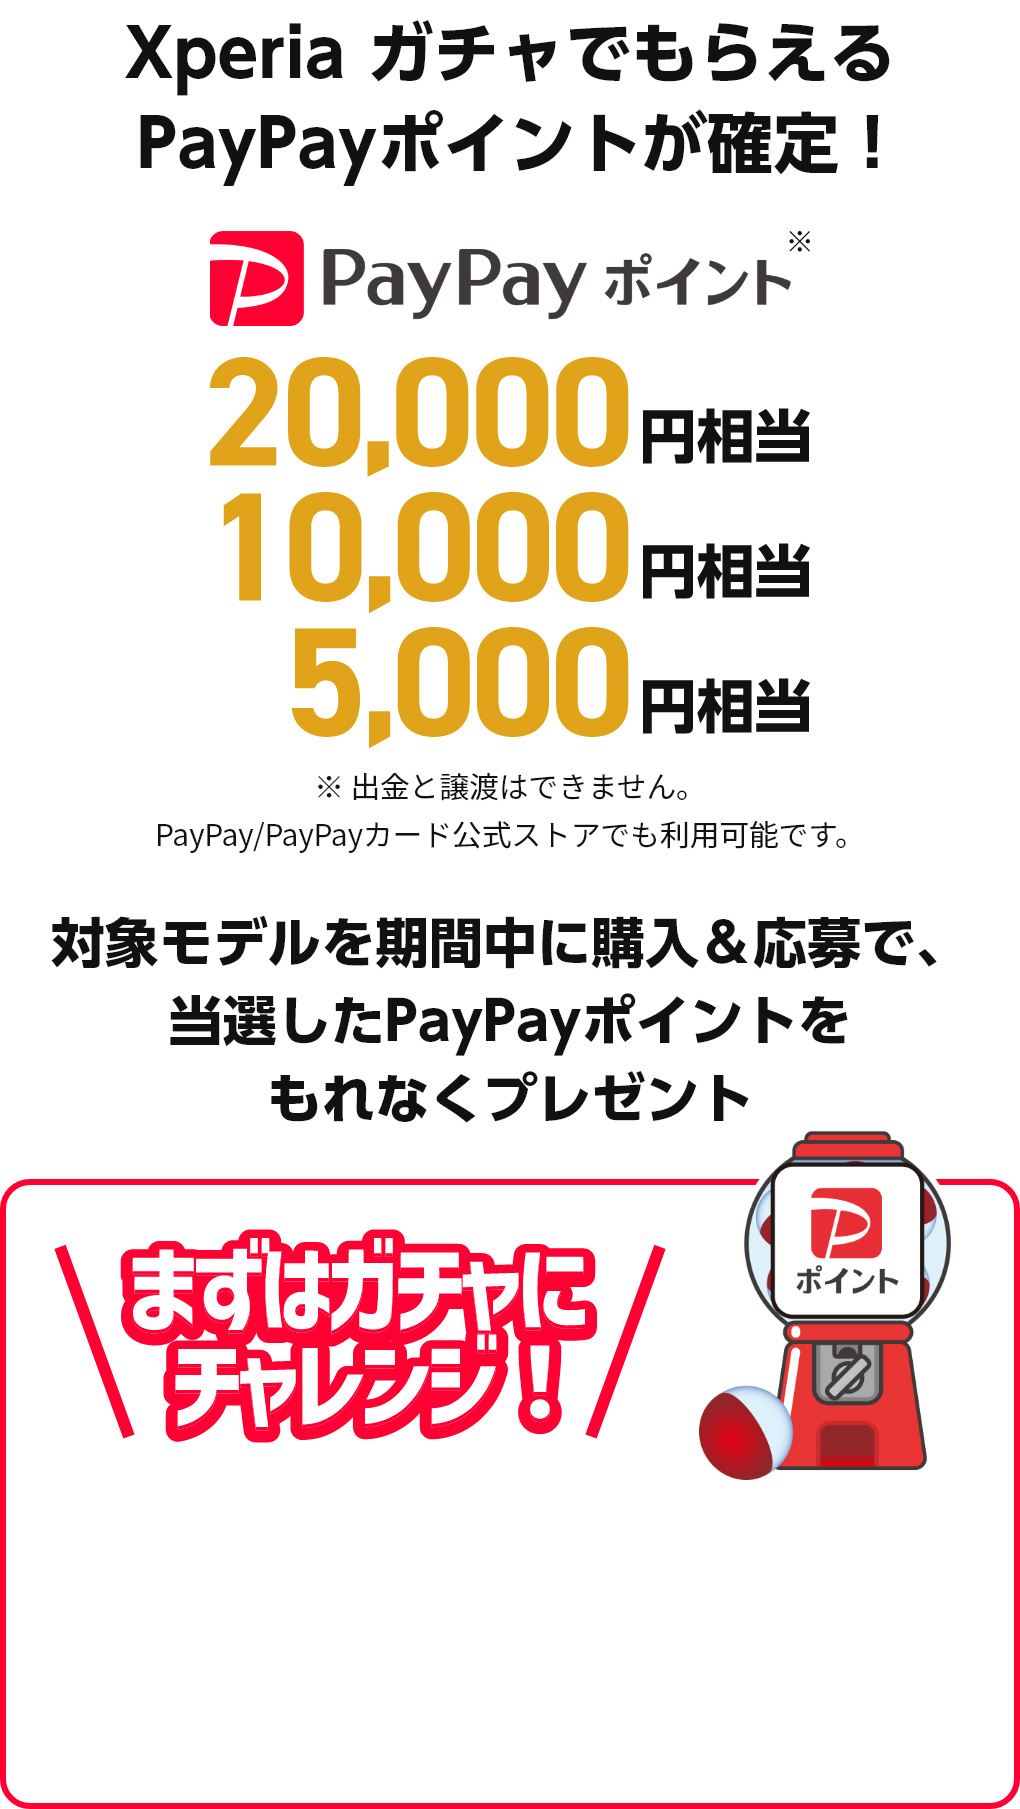 Xperia ガチャでもらえるPayPayポイントが確定！PayPayポイント*20,000円相当/10,000円相当/5,000円相当 ※出金と譲渡はできません。PayPay/PayPayカード公式ストアでも利用可能です。 対象モデルを期間中に購入＆応募で、当選したPayPayポイントをもれなくプレゼント まずはガチャにチャレンジ！